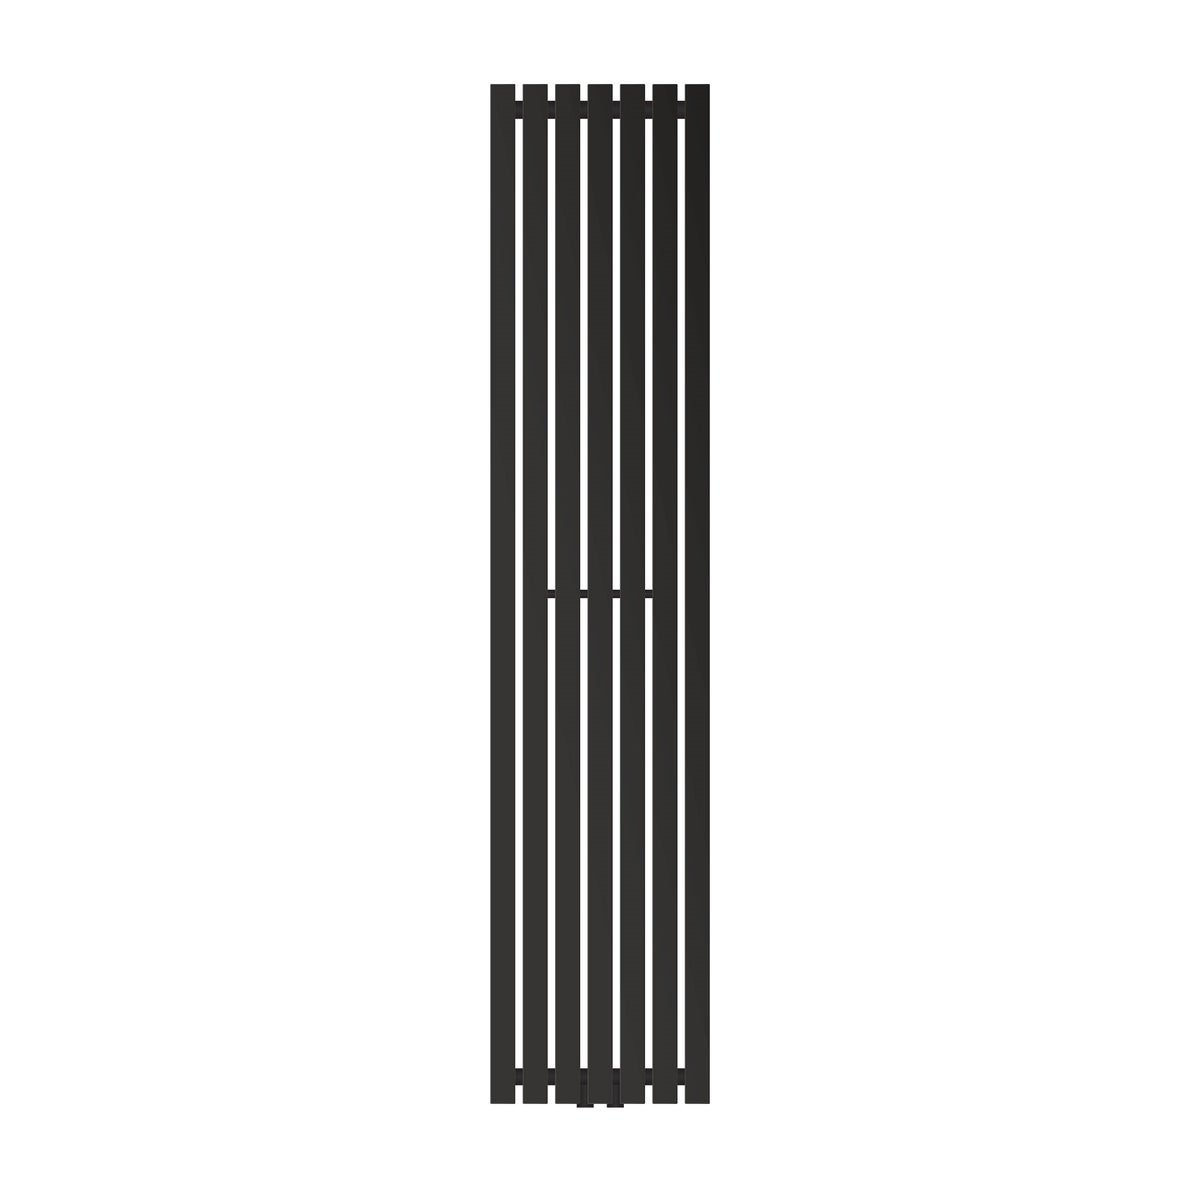 LuxeBath Designheizkörper Stella 1800 x 370 mm, Schwarz matt, Paneelheizkörper mit Mittelanschluss, Einlagig, Flach, Vertikal, Badheizkörper Röhrenheizkörper Bad Flachheizkörper Badezimmer Wandheizung